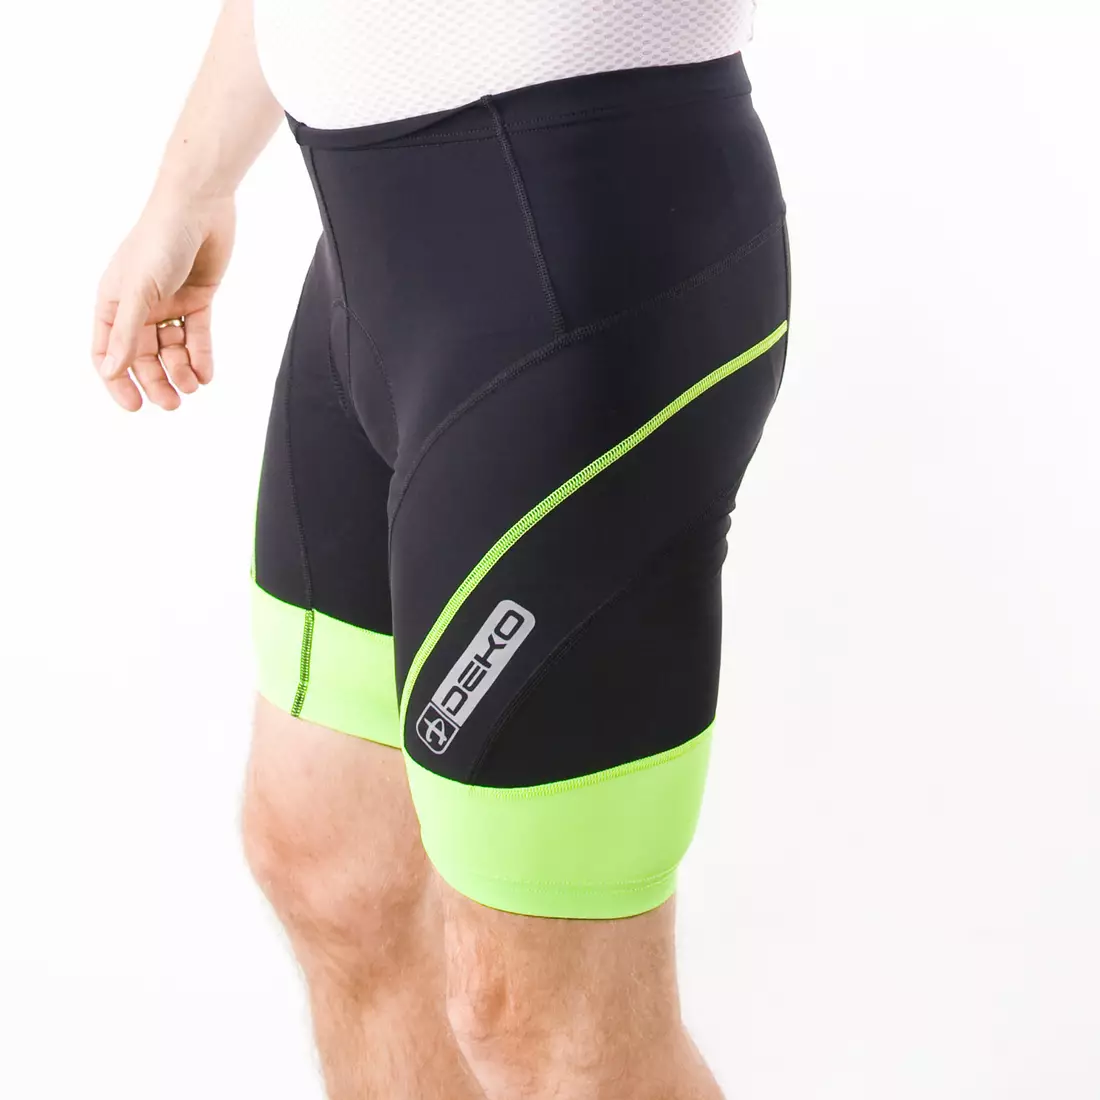 DEKO CLASSIC men's cycling shorts, black-fluo-yellow